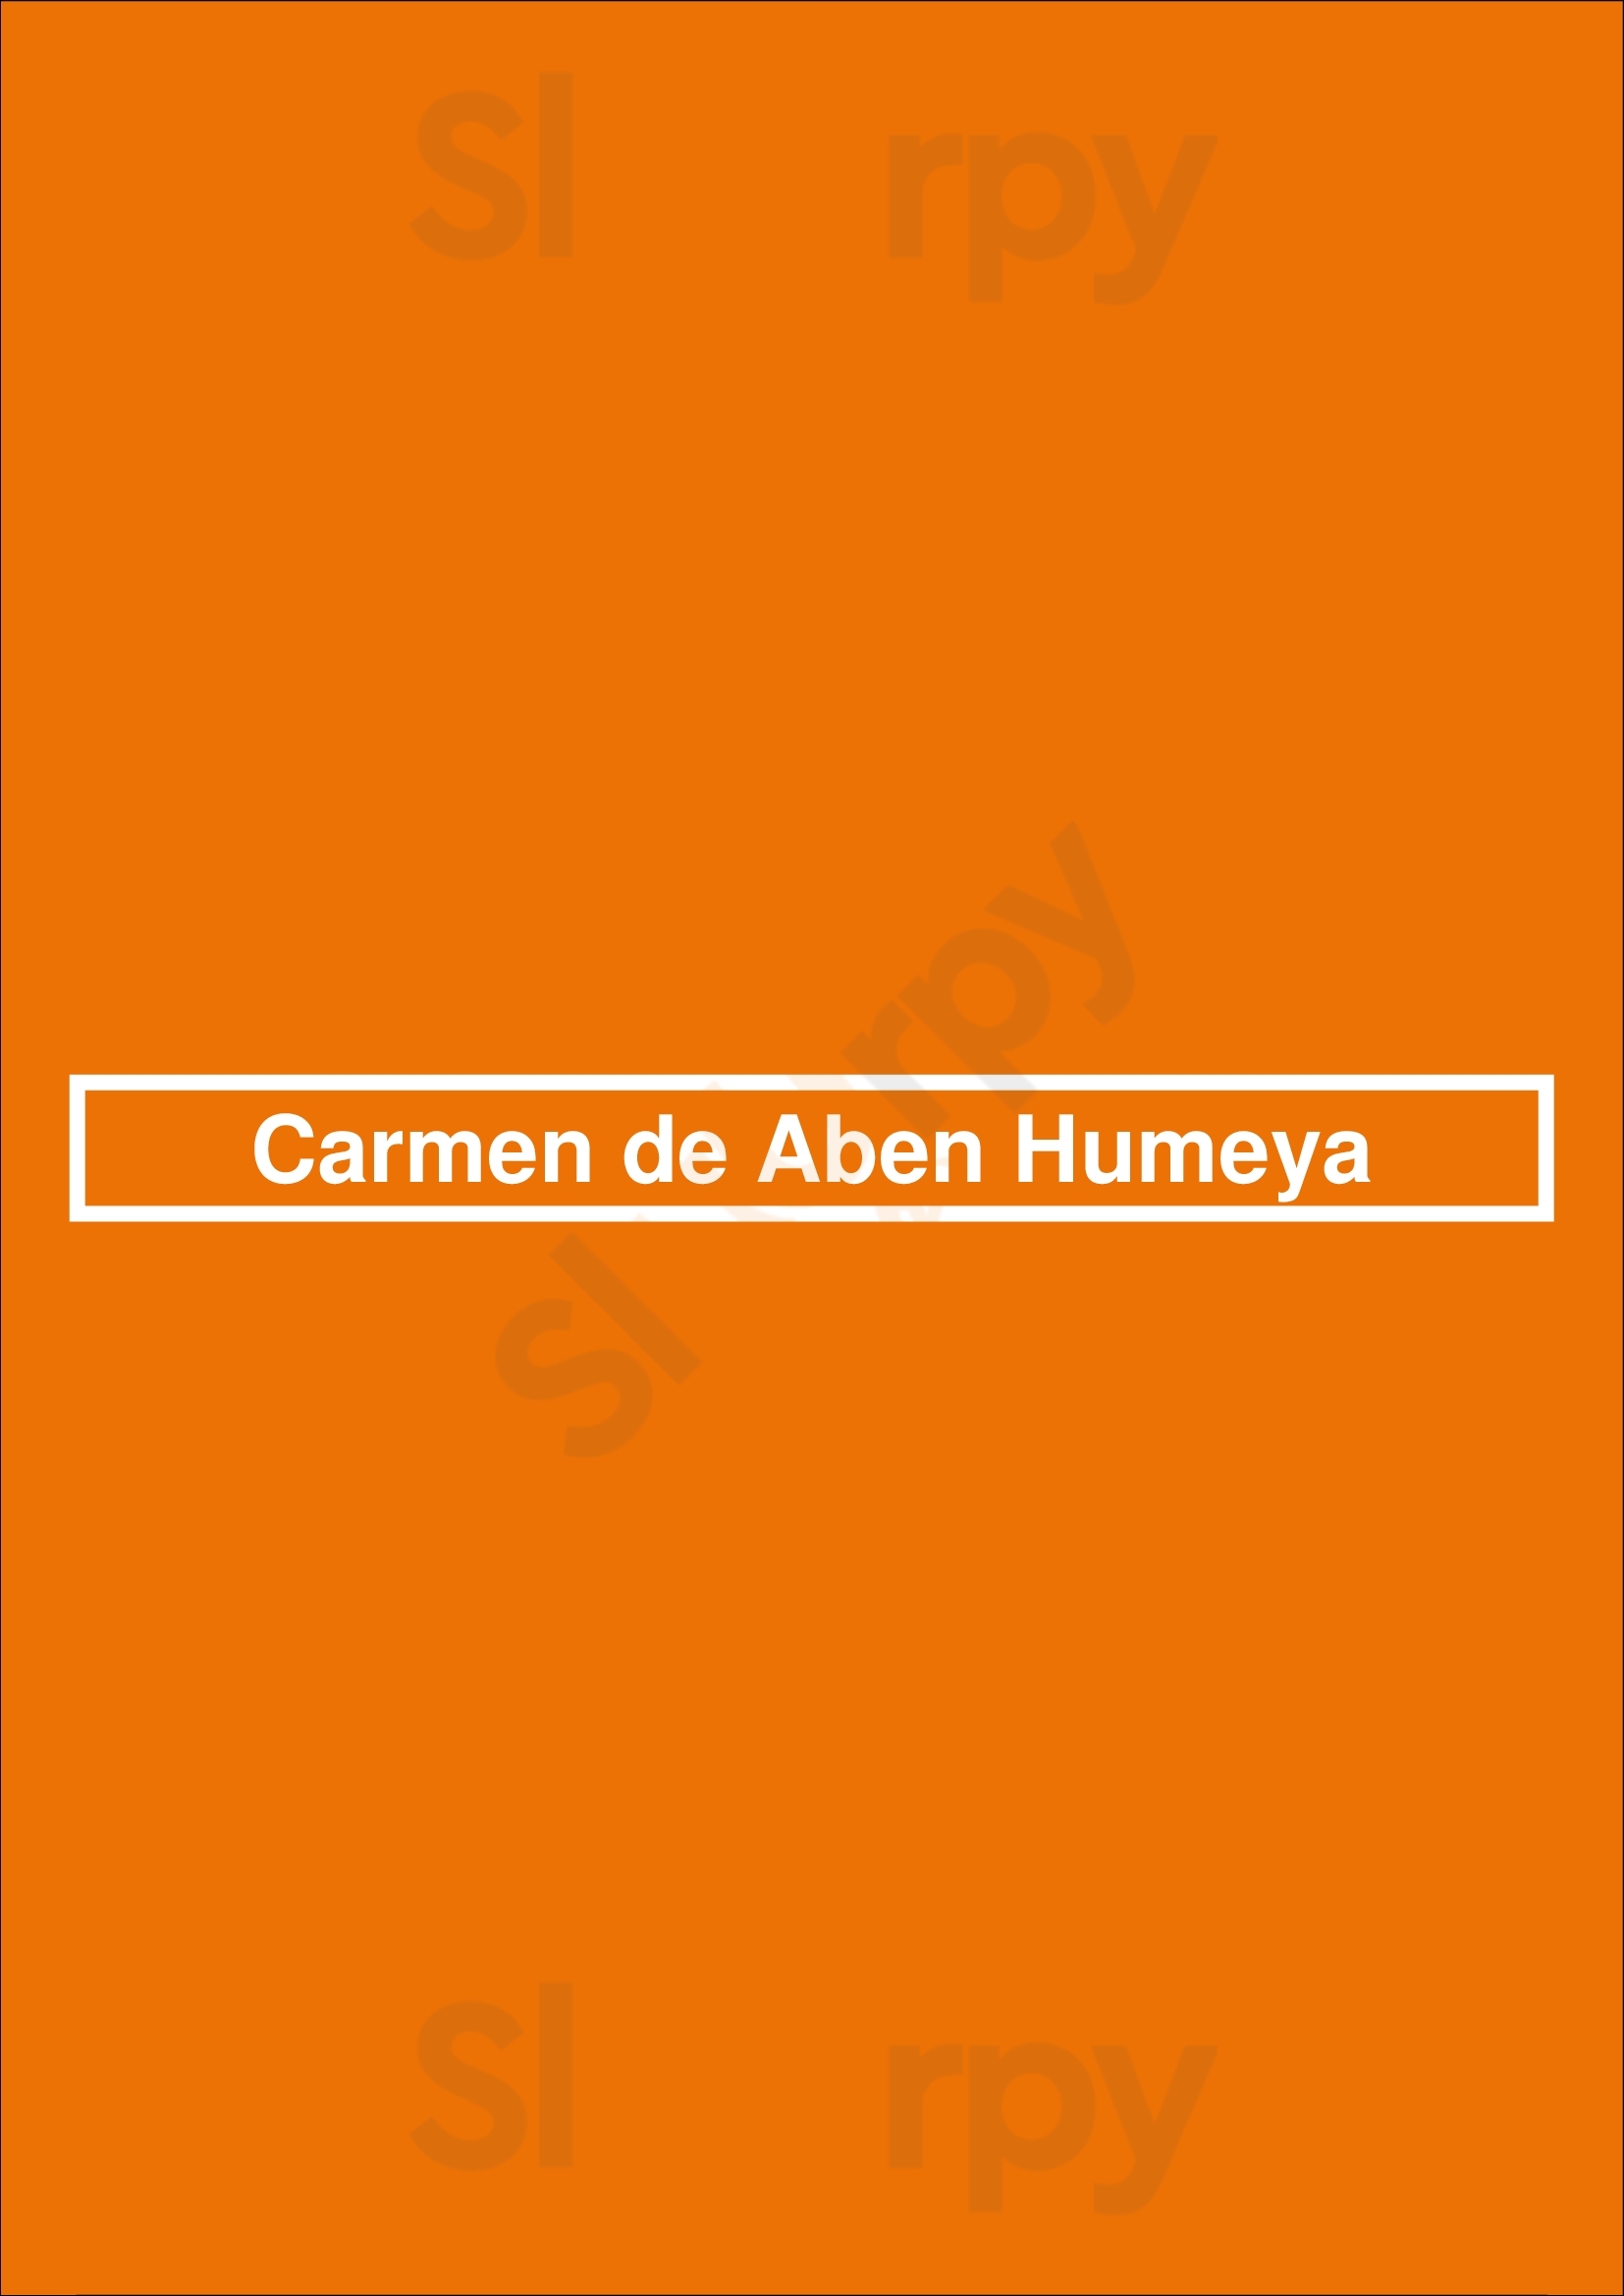 Carmen De Aben Humeya Granada Menu - 1